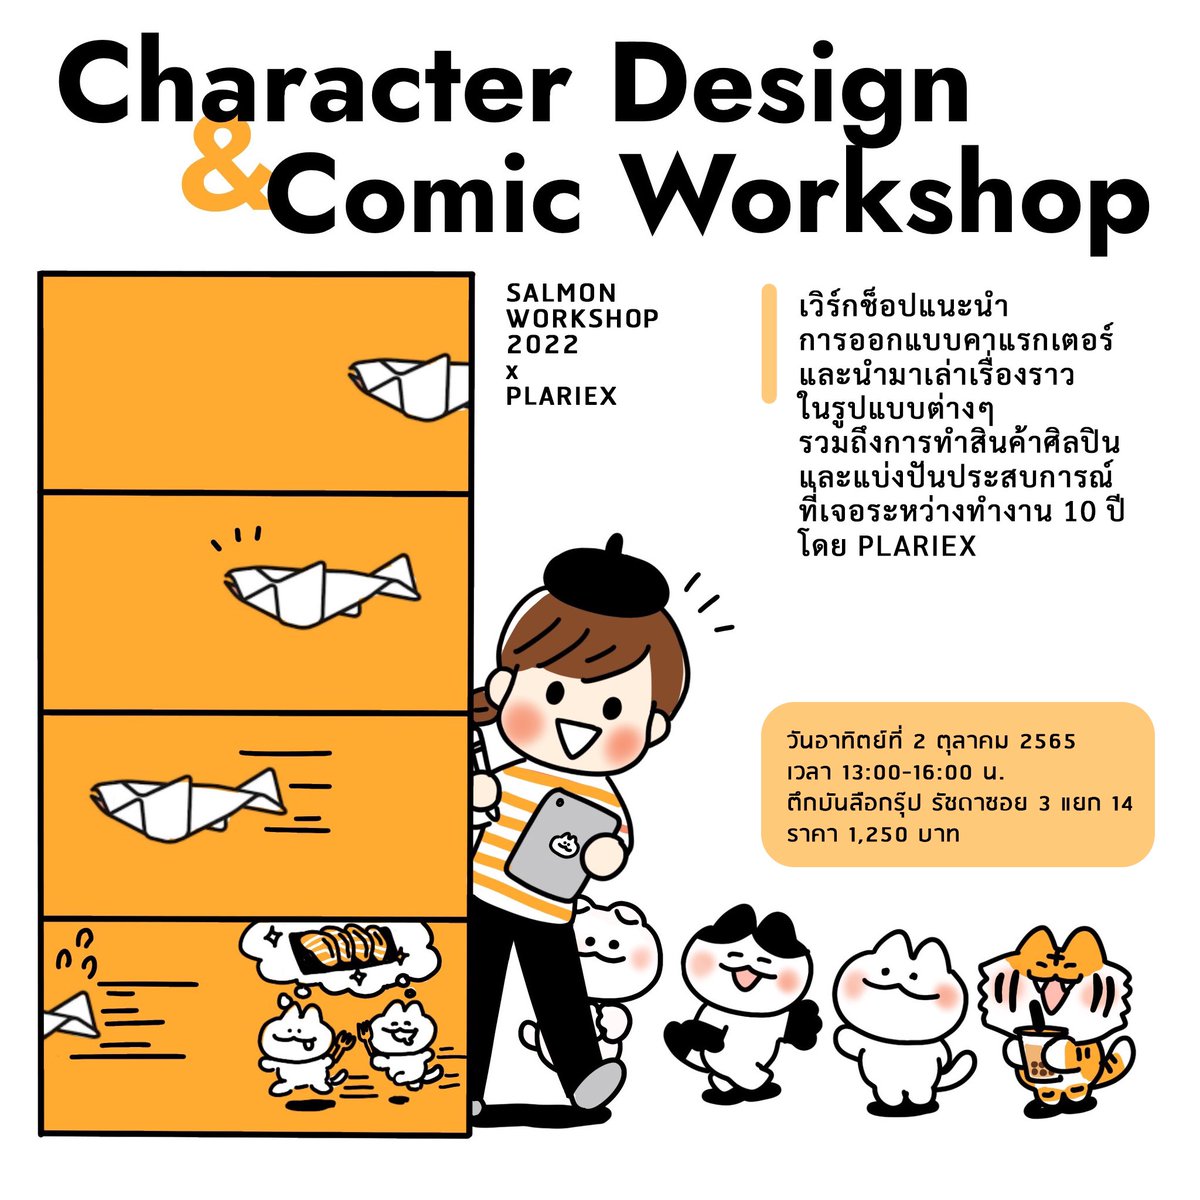 อัพเดตเวิร์กชอปอีกครั้งนะคะ 😃 เราจะจัดเวิร์กชอป Character Design & Comic Workshop ร่วมกับทางสนพ. Salmon Books ที่ตึกบันลือ บ่ายโมงถึงสี่โมงเย็นวันอาทิตย์ที่ 2 ตุลาคมค่า ตอนนี้ยังมีที่ว่างอยู่อีกนิดนึงค่ะ 